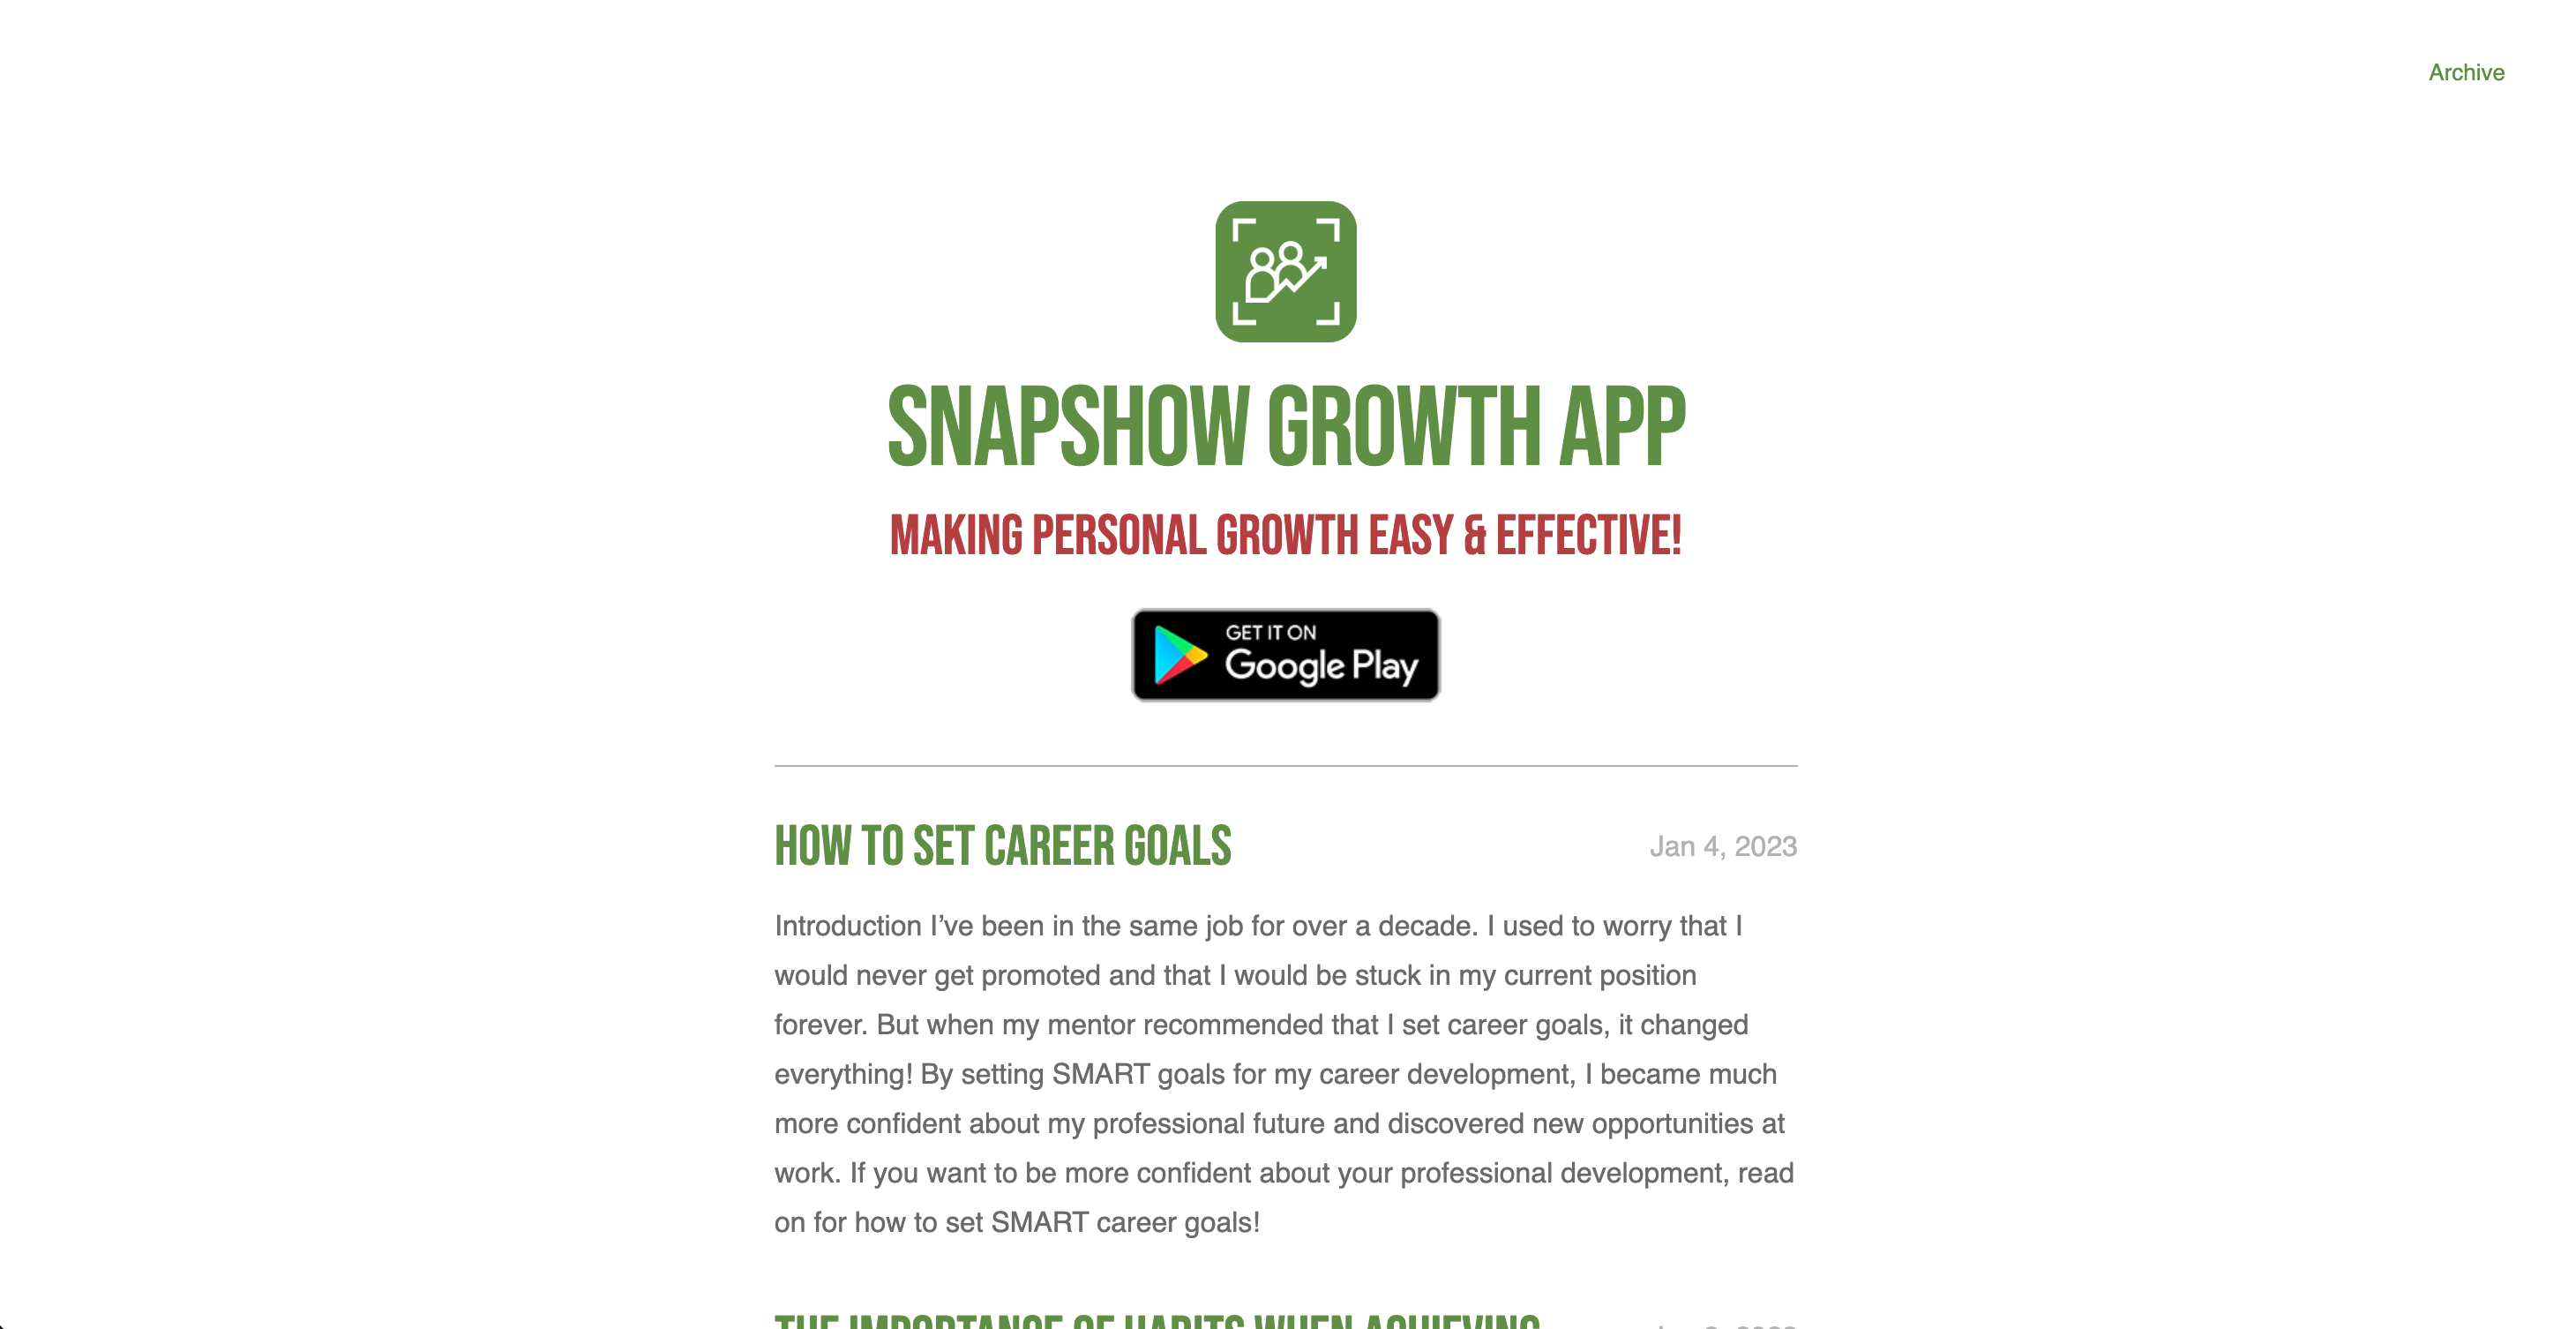 Snapshot Growth App Website